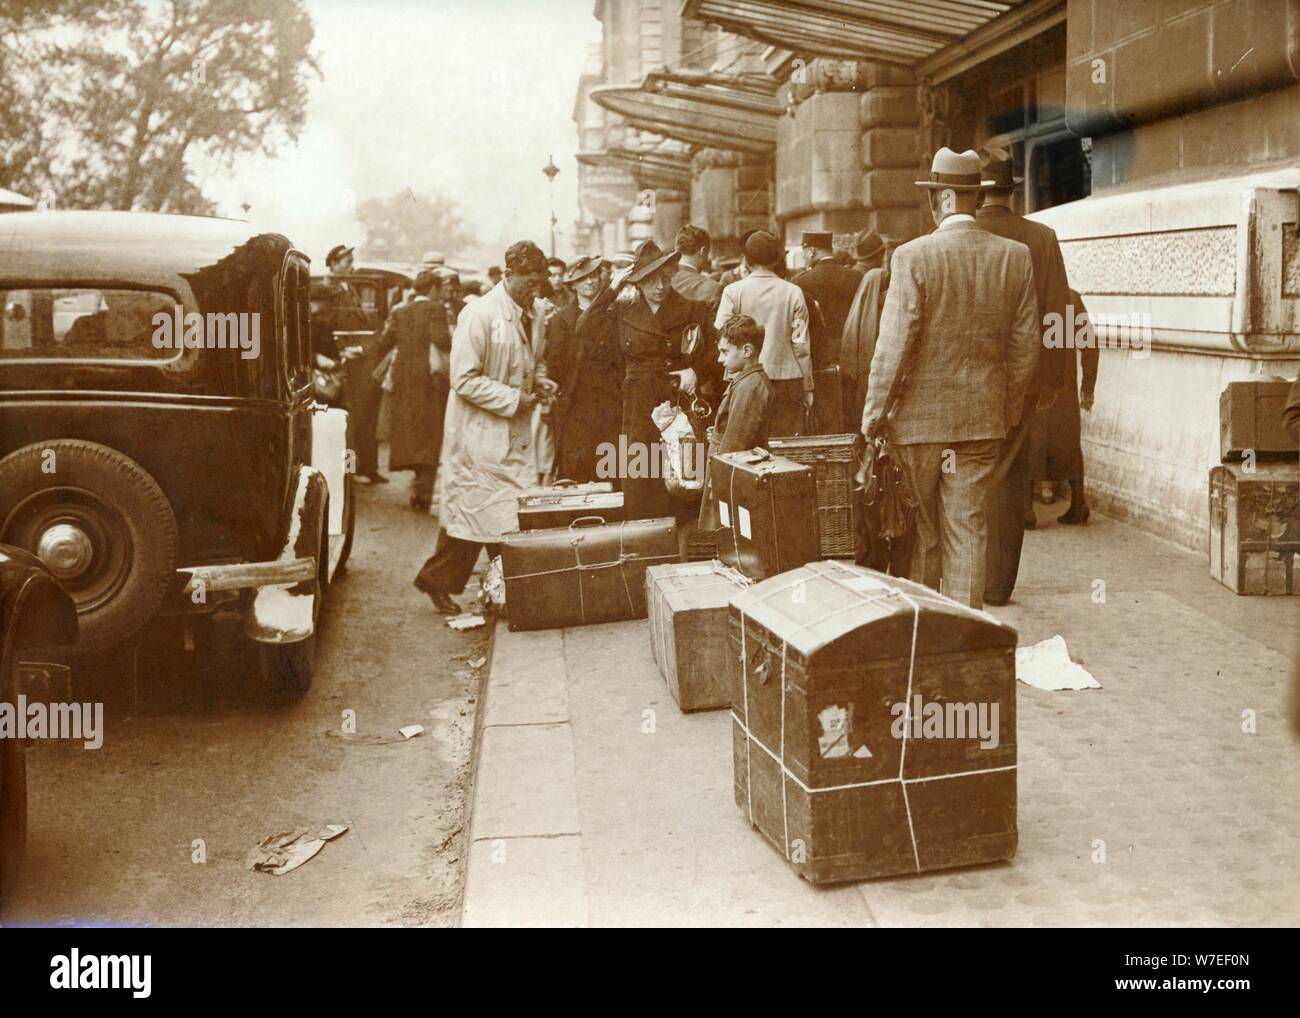 Évacuer les familles françaises aux provinces, la gare d'Orsay, Paris, la seconde guerre mondiale, 1940. Artiste : Inconnu Banque D'Images